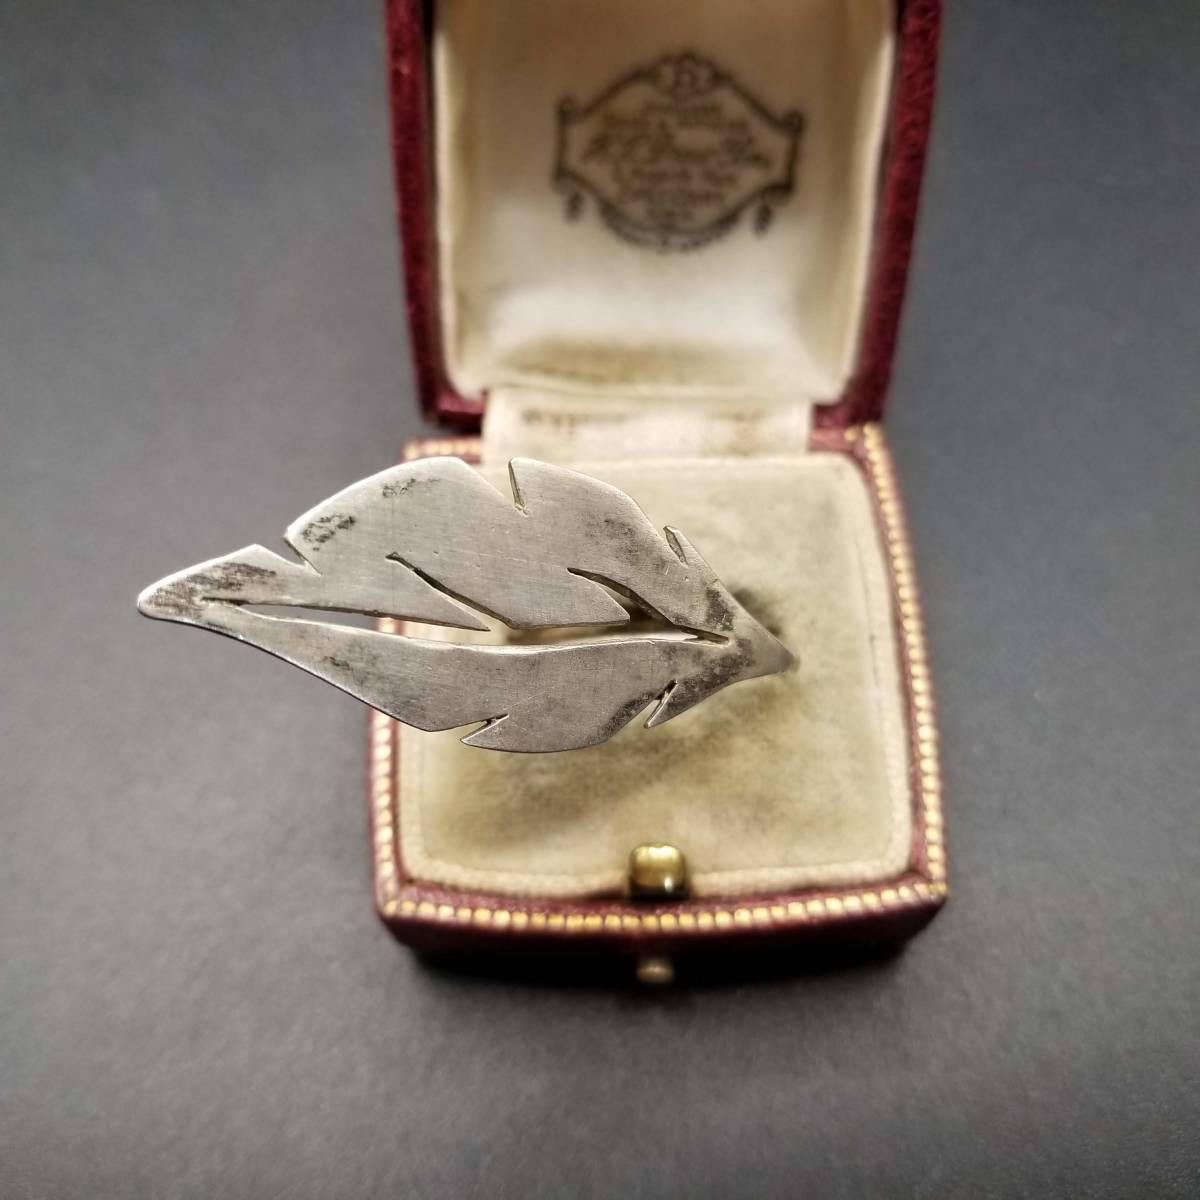  leaf leaf motif big Silhouette Vintage silver ring a-ru deco ring Showa Retro accessory jewelry import YAW④3